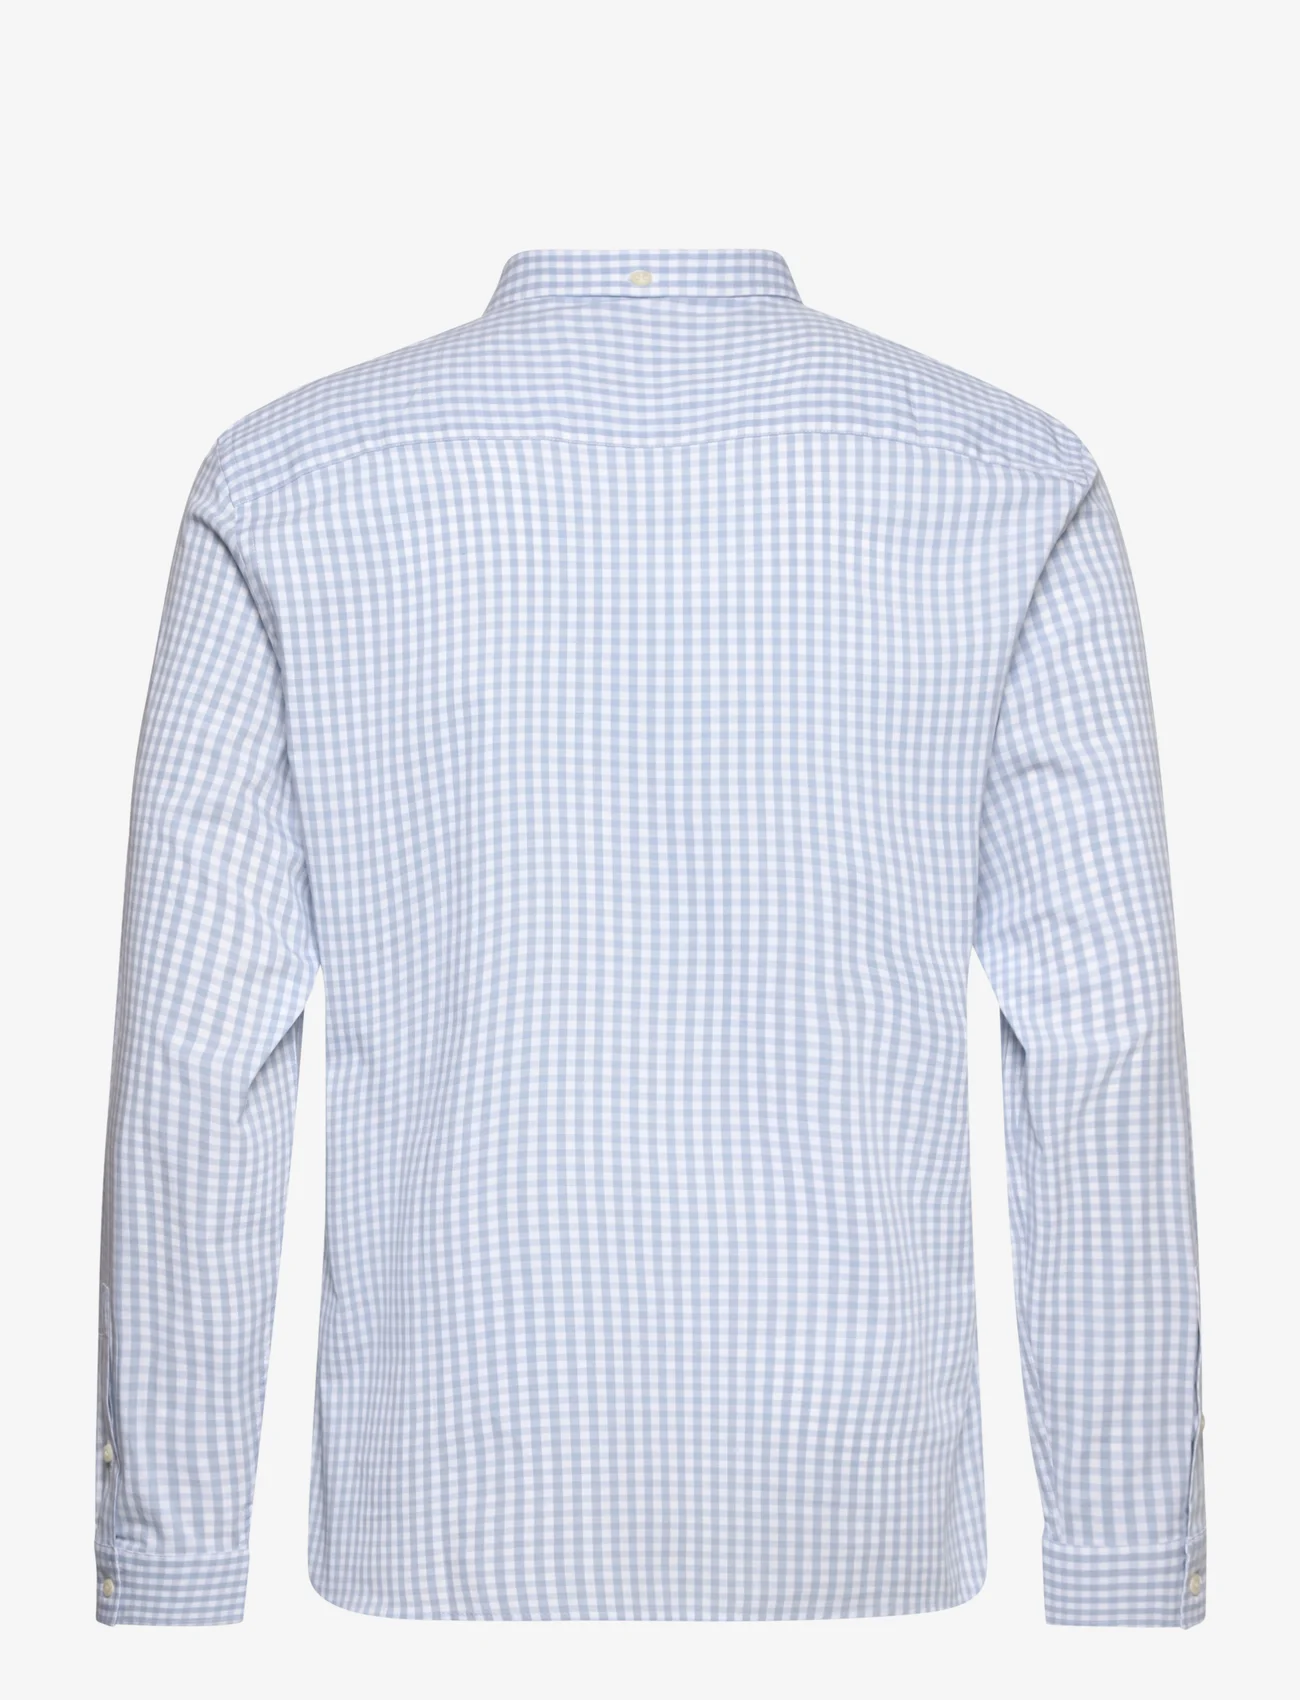 Lyle & Scott - LS Slim Fit Gingham Shirt - karierte hemden - light blue/ white - 1